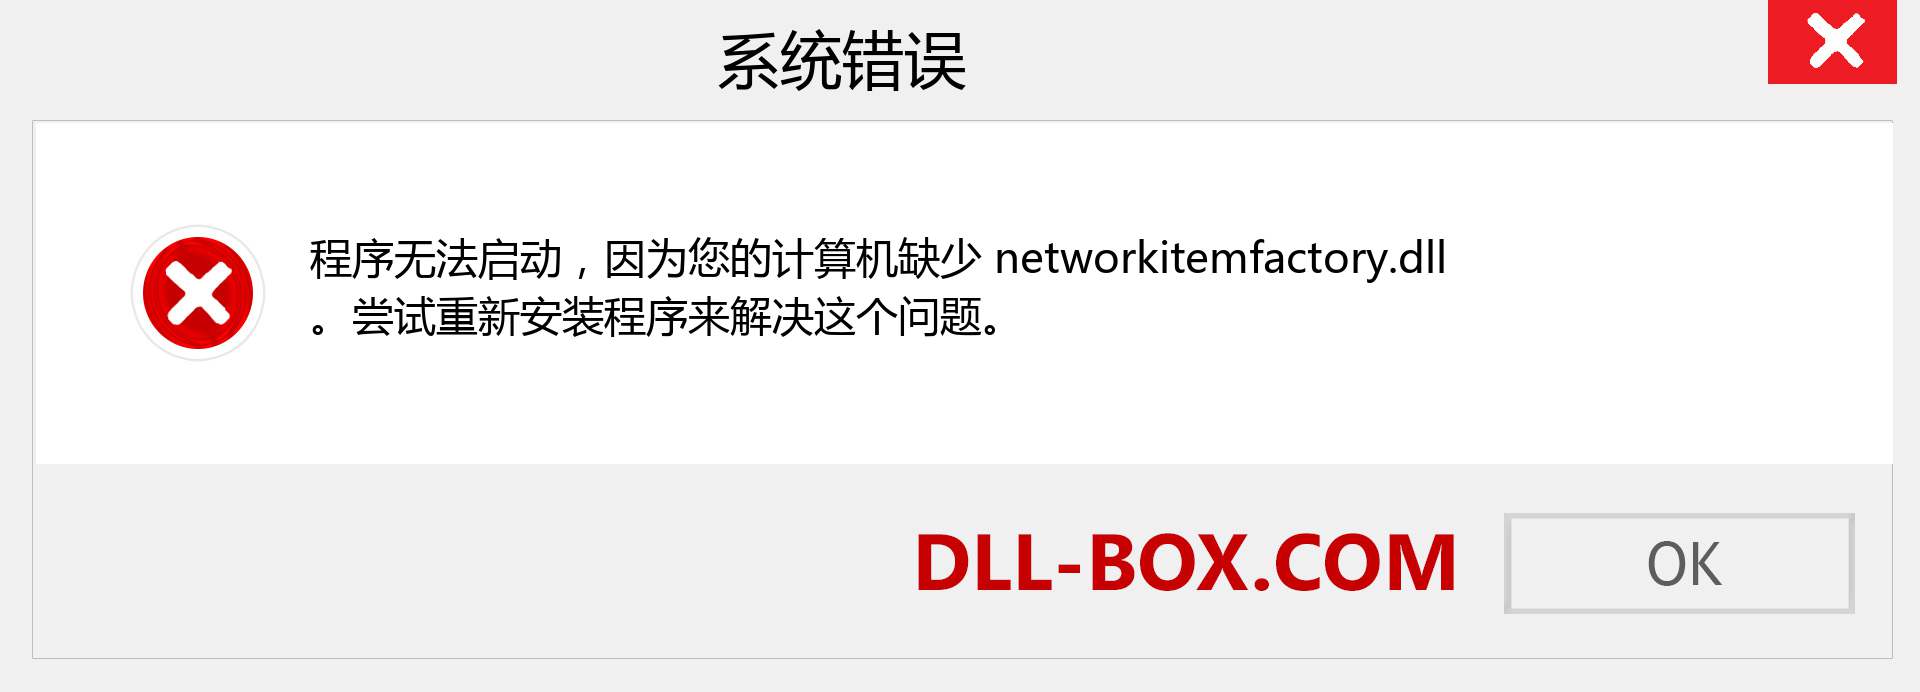 networkitemfactory.dll 文件丢失？。 适用于 Windows 7、8、10 的下载 - 修复 Windows、照片、图像上的 networkitemfactory dll 丢失错误